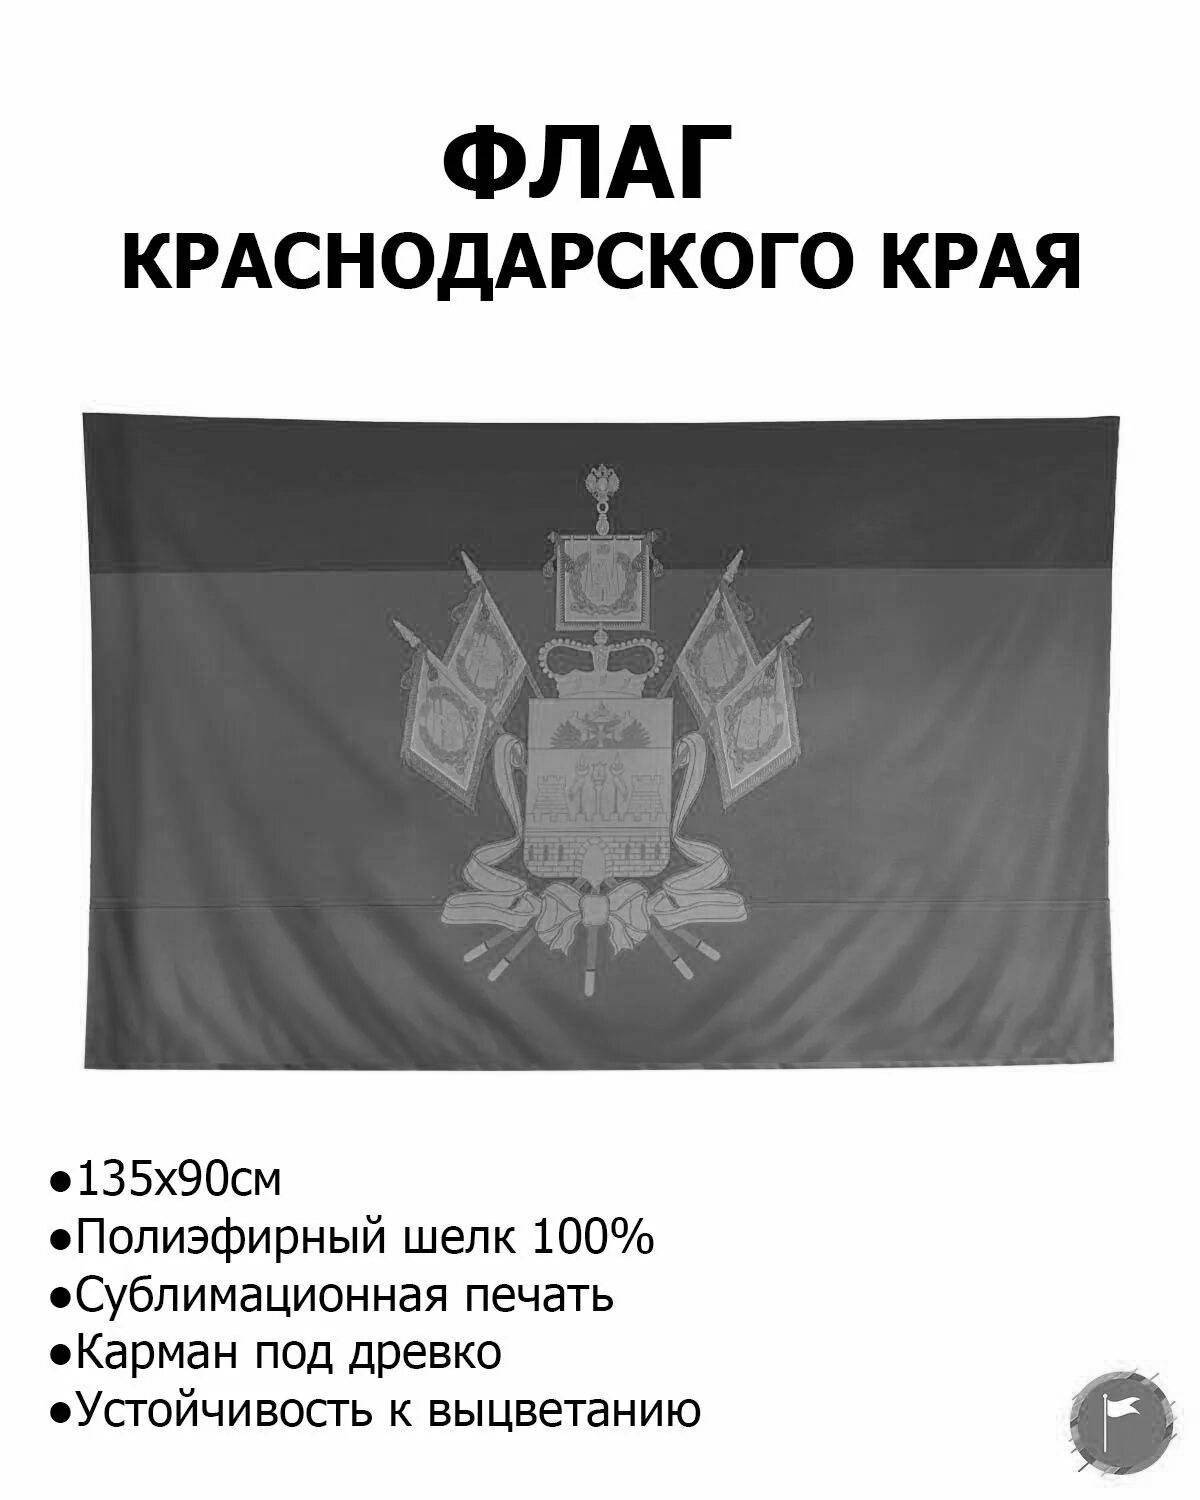 Glorious flag of krasnodar